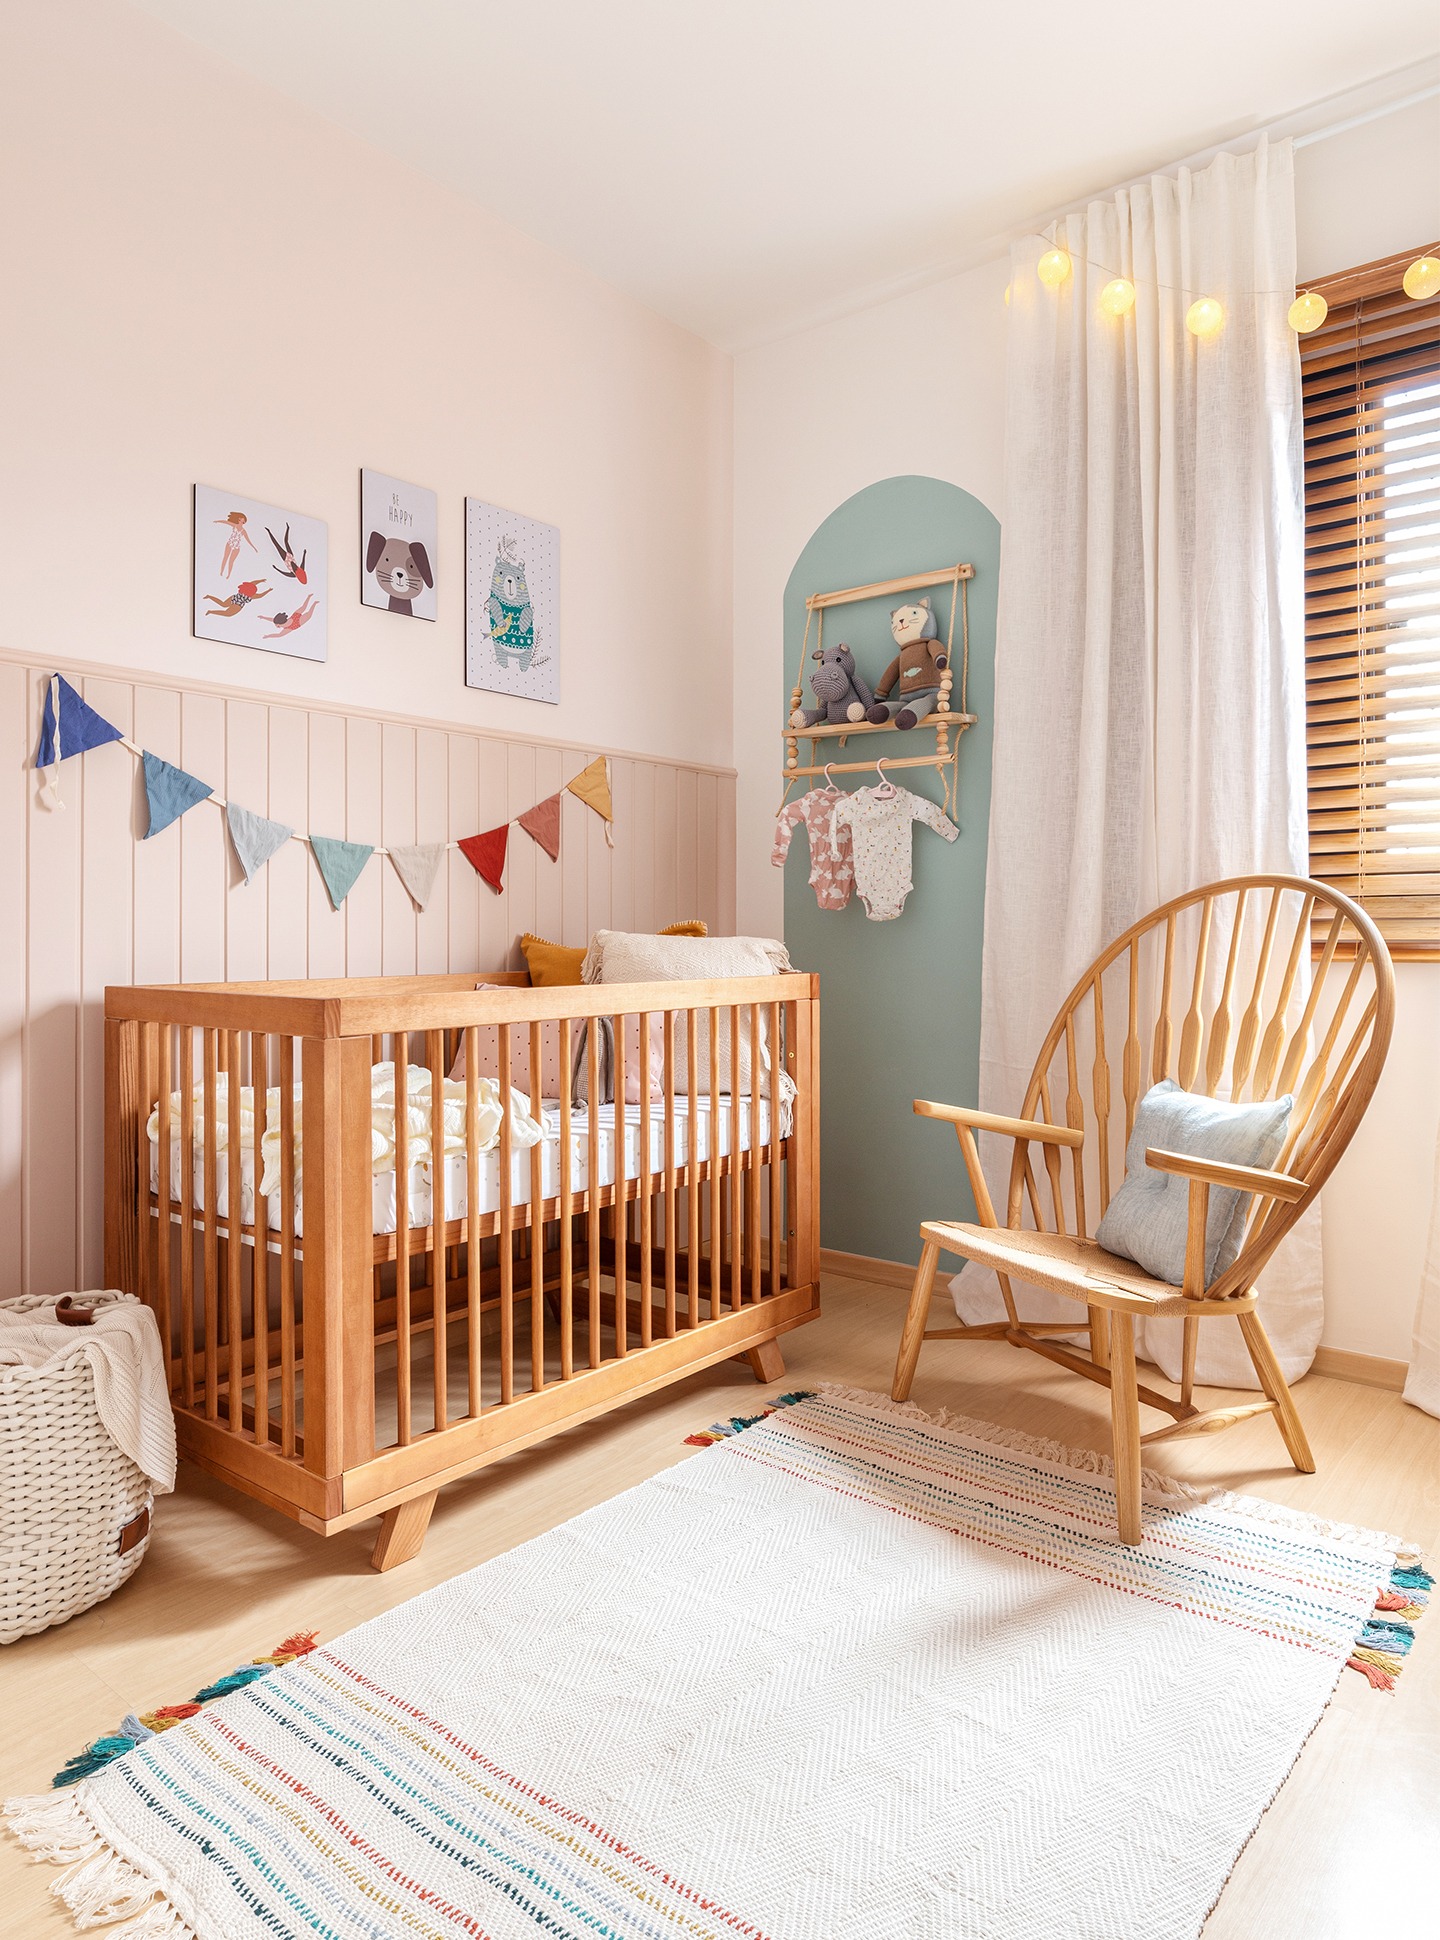 Antes e Depois quarto de bebê parede azul, cadeira e berço de madeira, varal decorativo